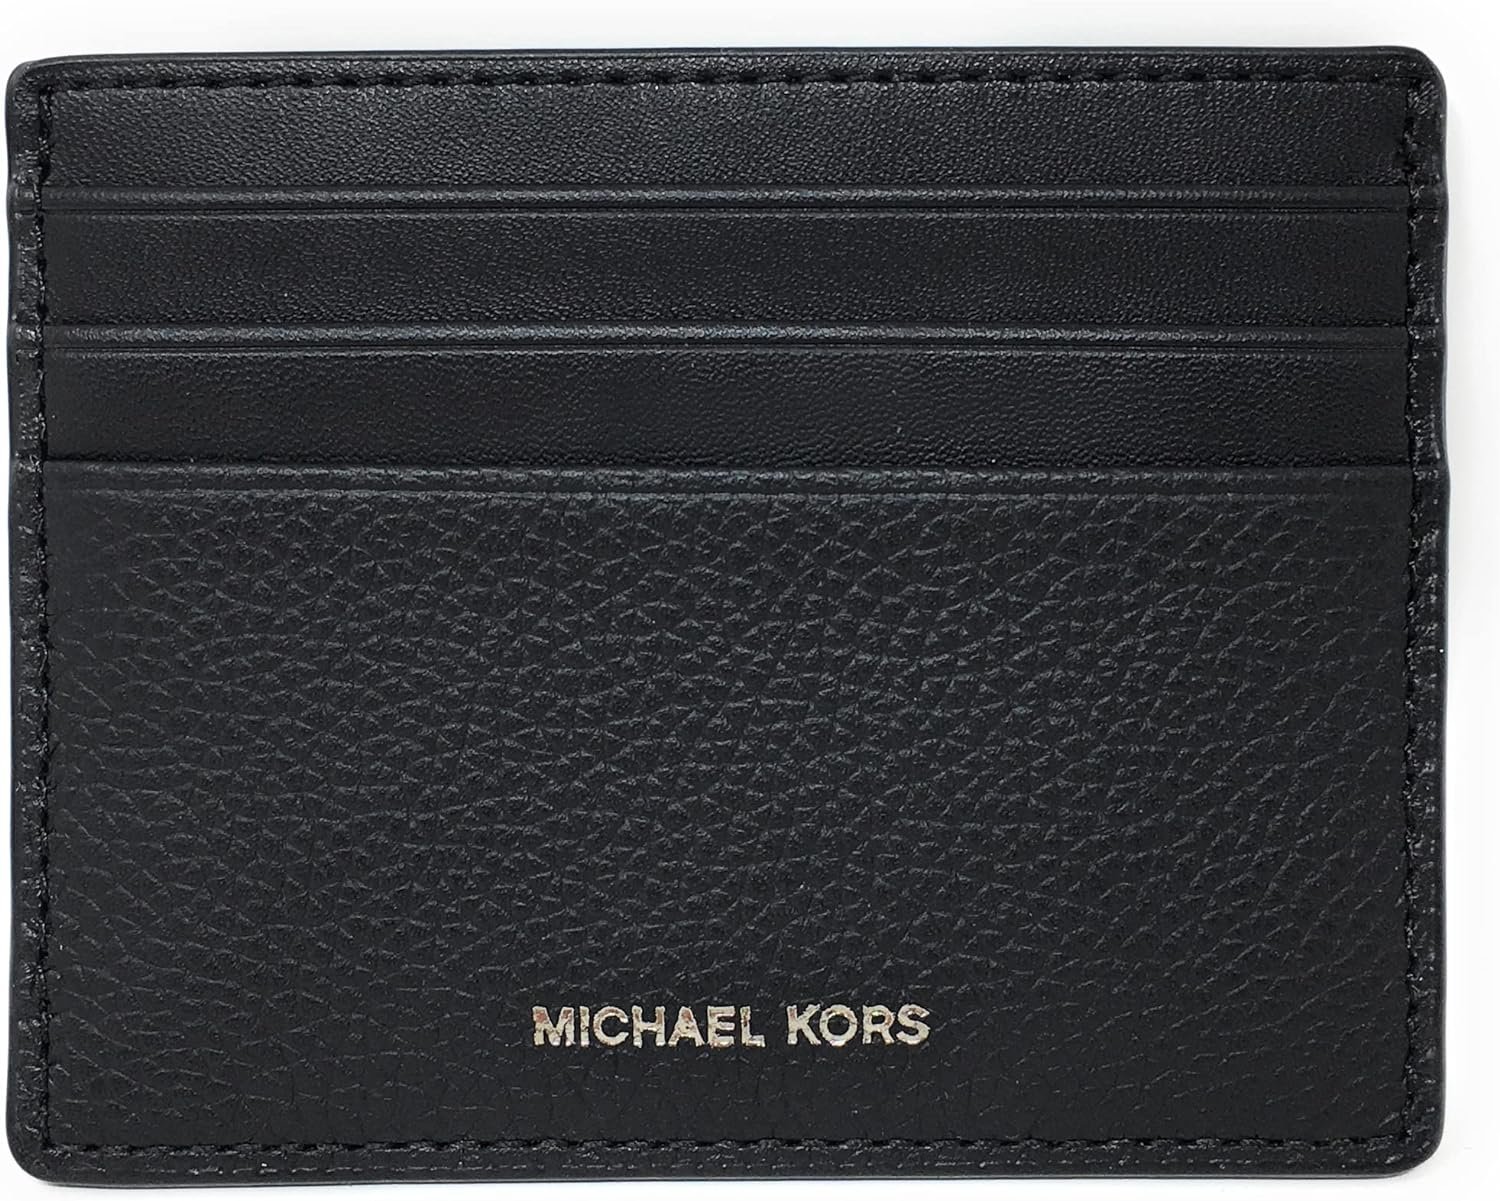 Michael Kors Cooper Wallet Review